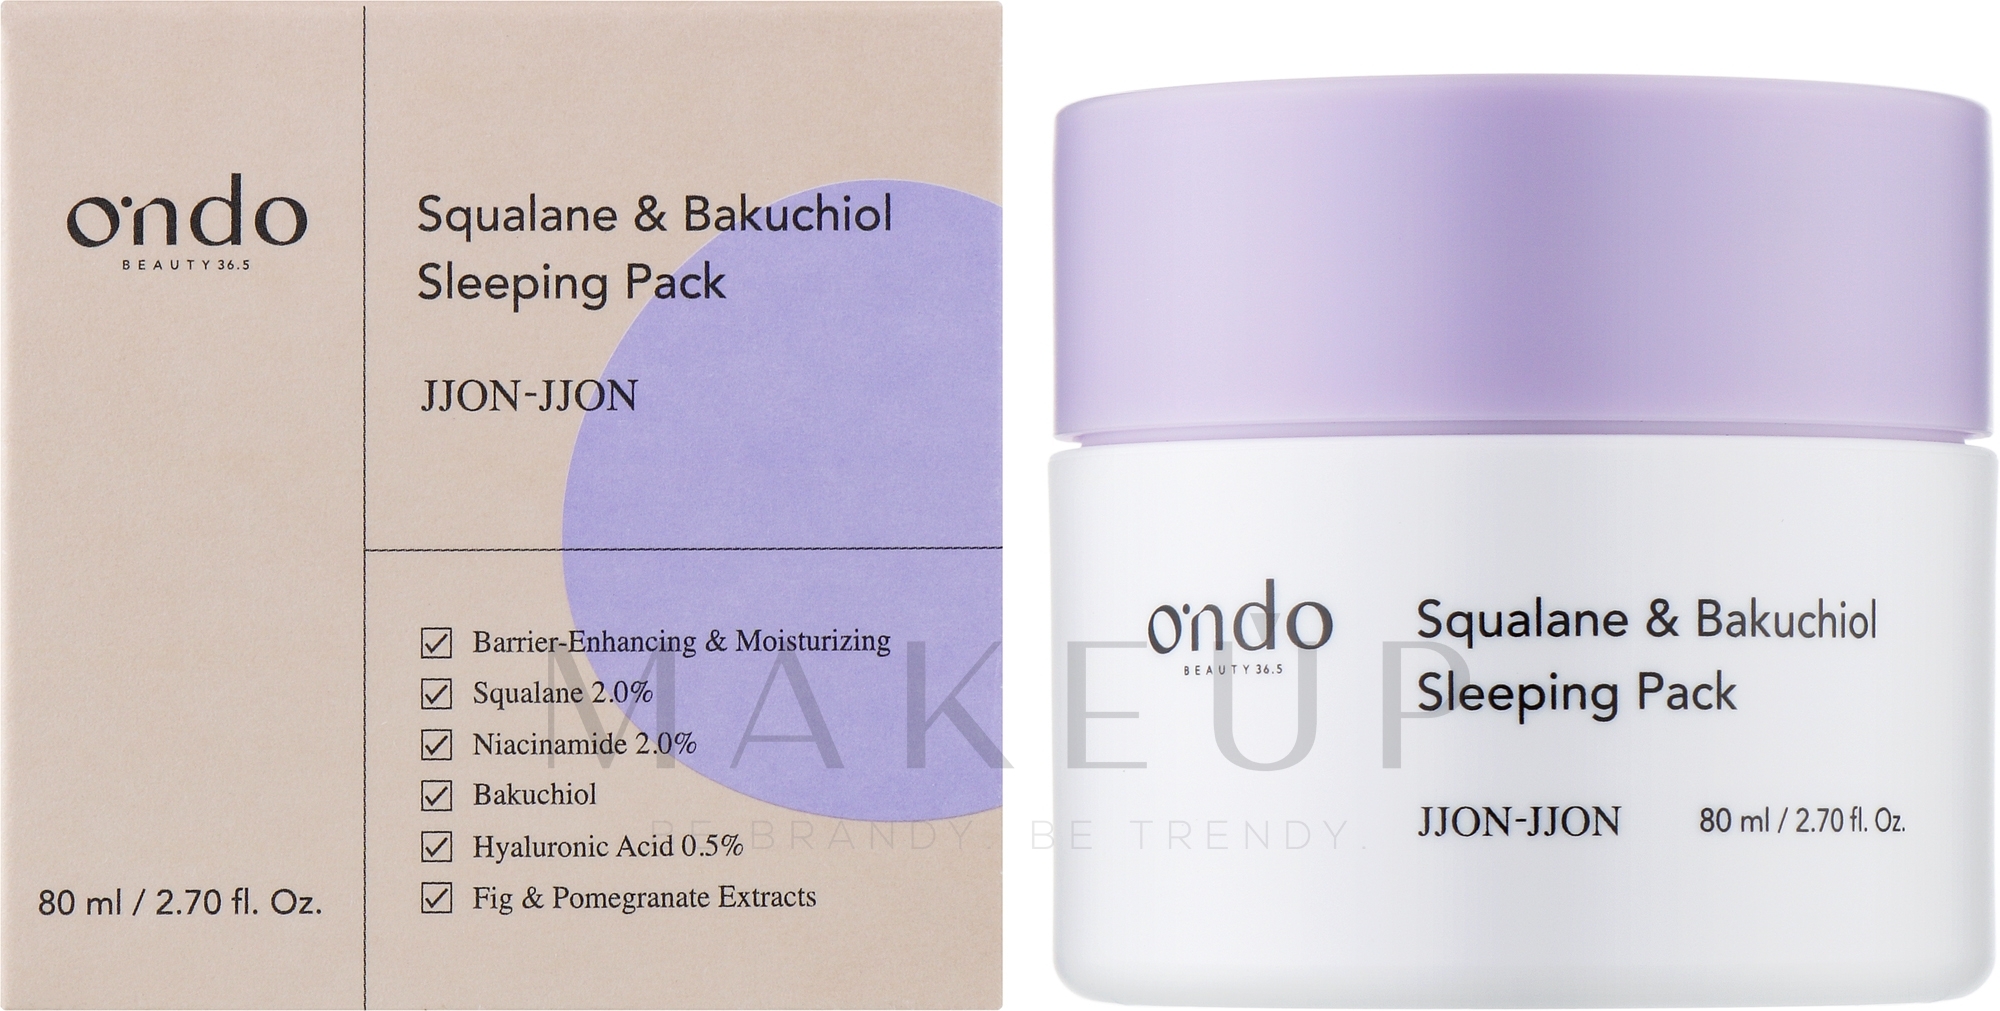 Gesichtsmaske für die Nacht mit Bacucciol und Squalan - Ondo Beauty 36.5 Squalane & Bakuchiol Sleeping Pack — Bild 80 ml